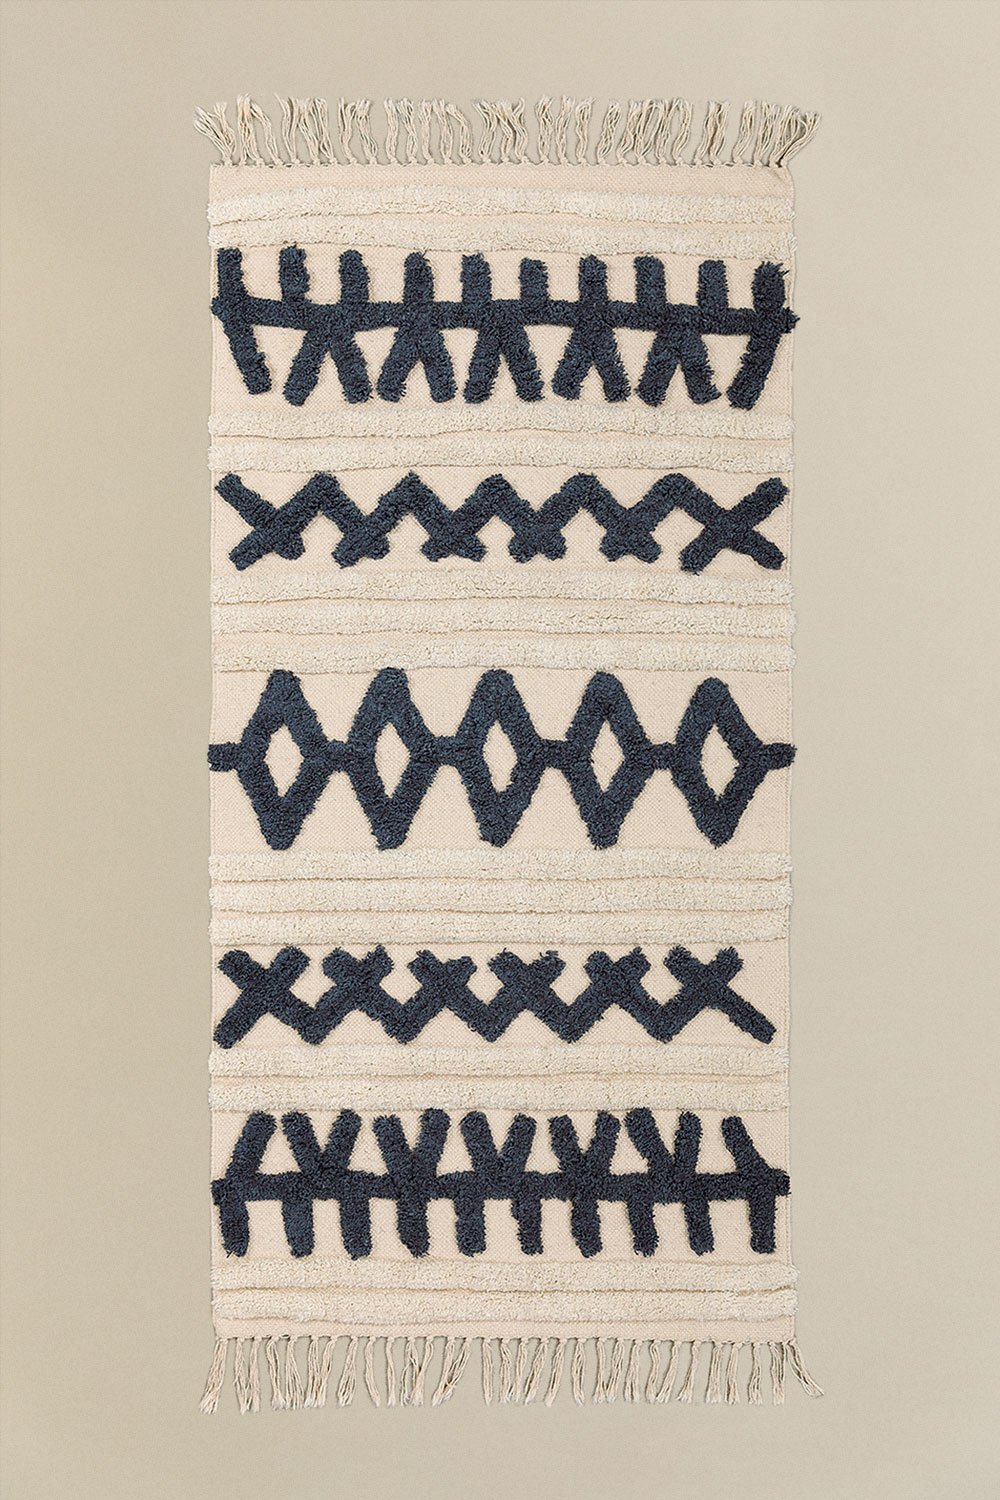 Tappeto in cotone (160x70 cm) Belin, immagine della galleria 1